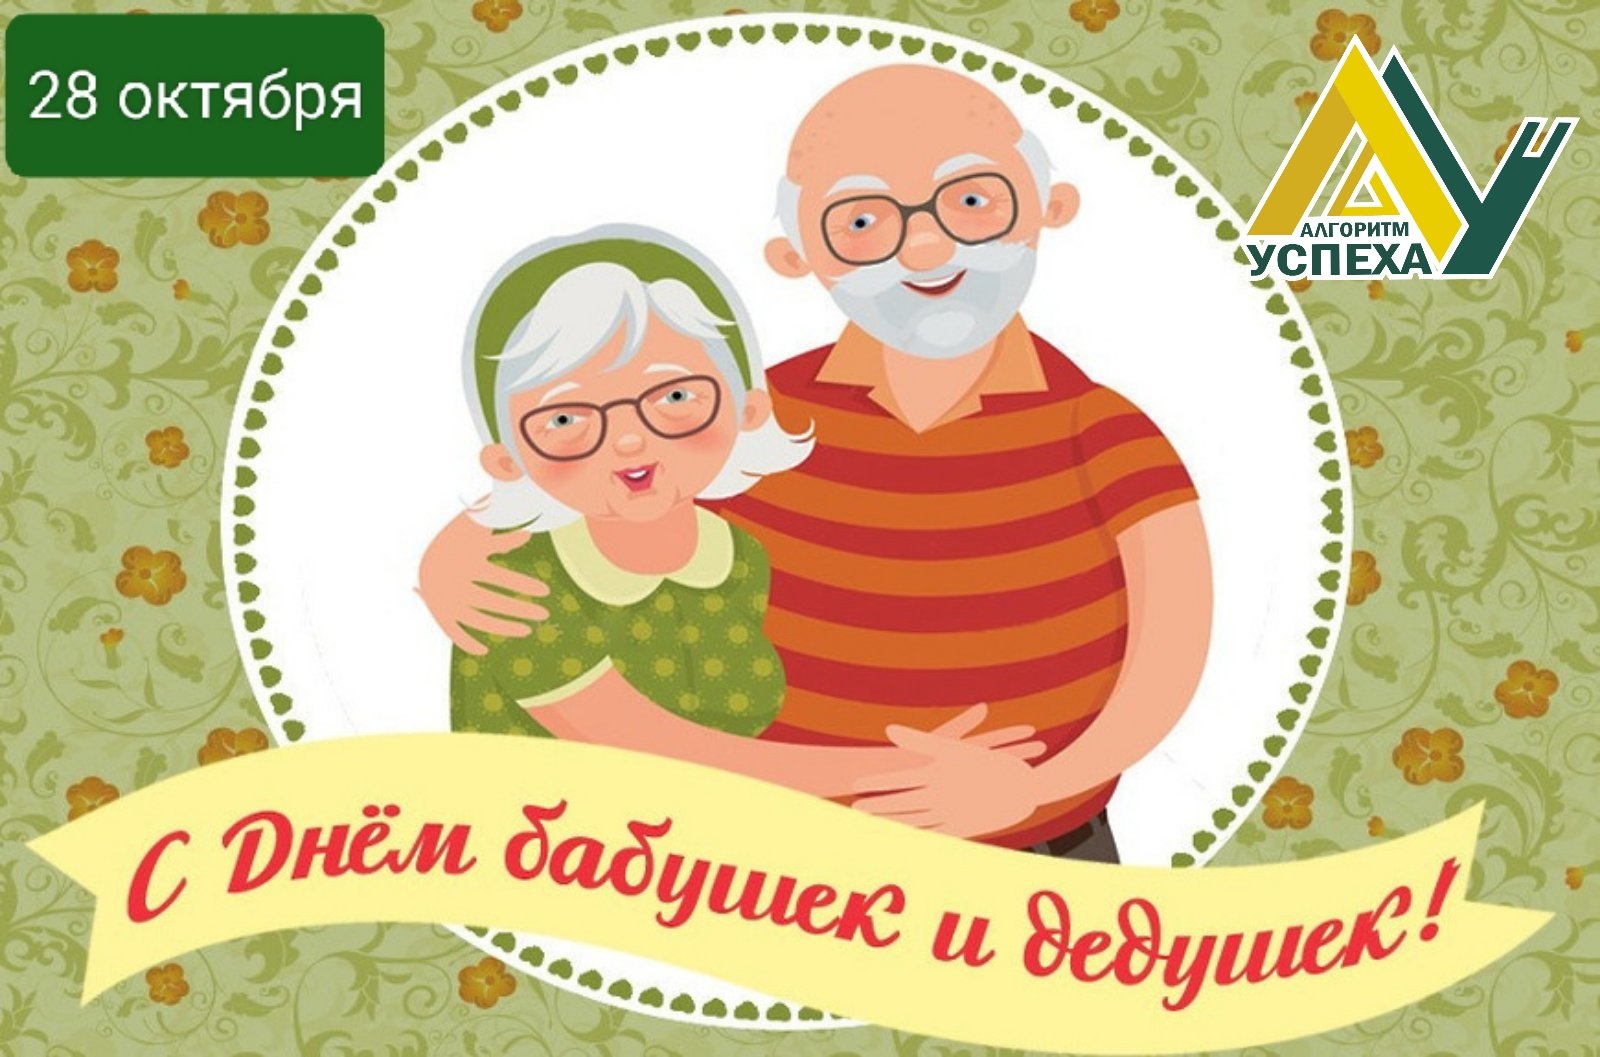 28 октября в России отмечается День бабушек и дедушек, которые являются прочным и надежным фундаментом современной семьи.